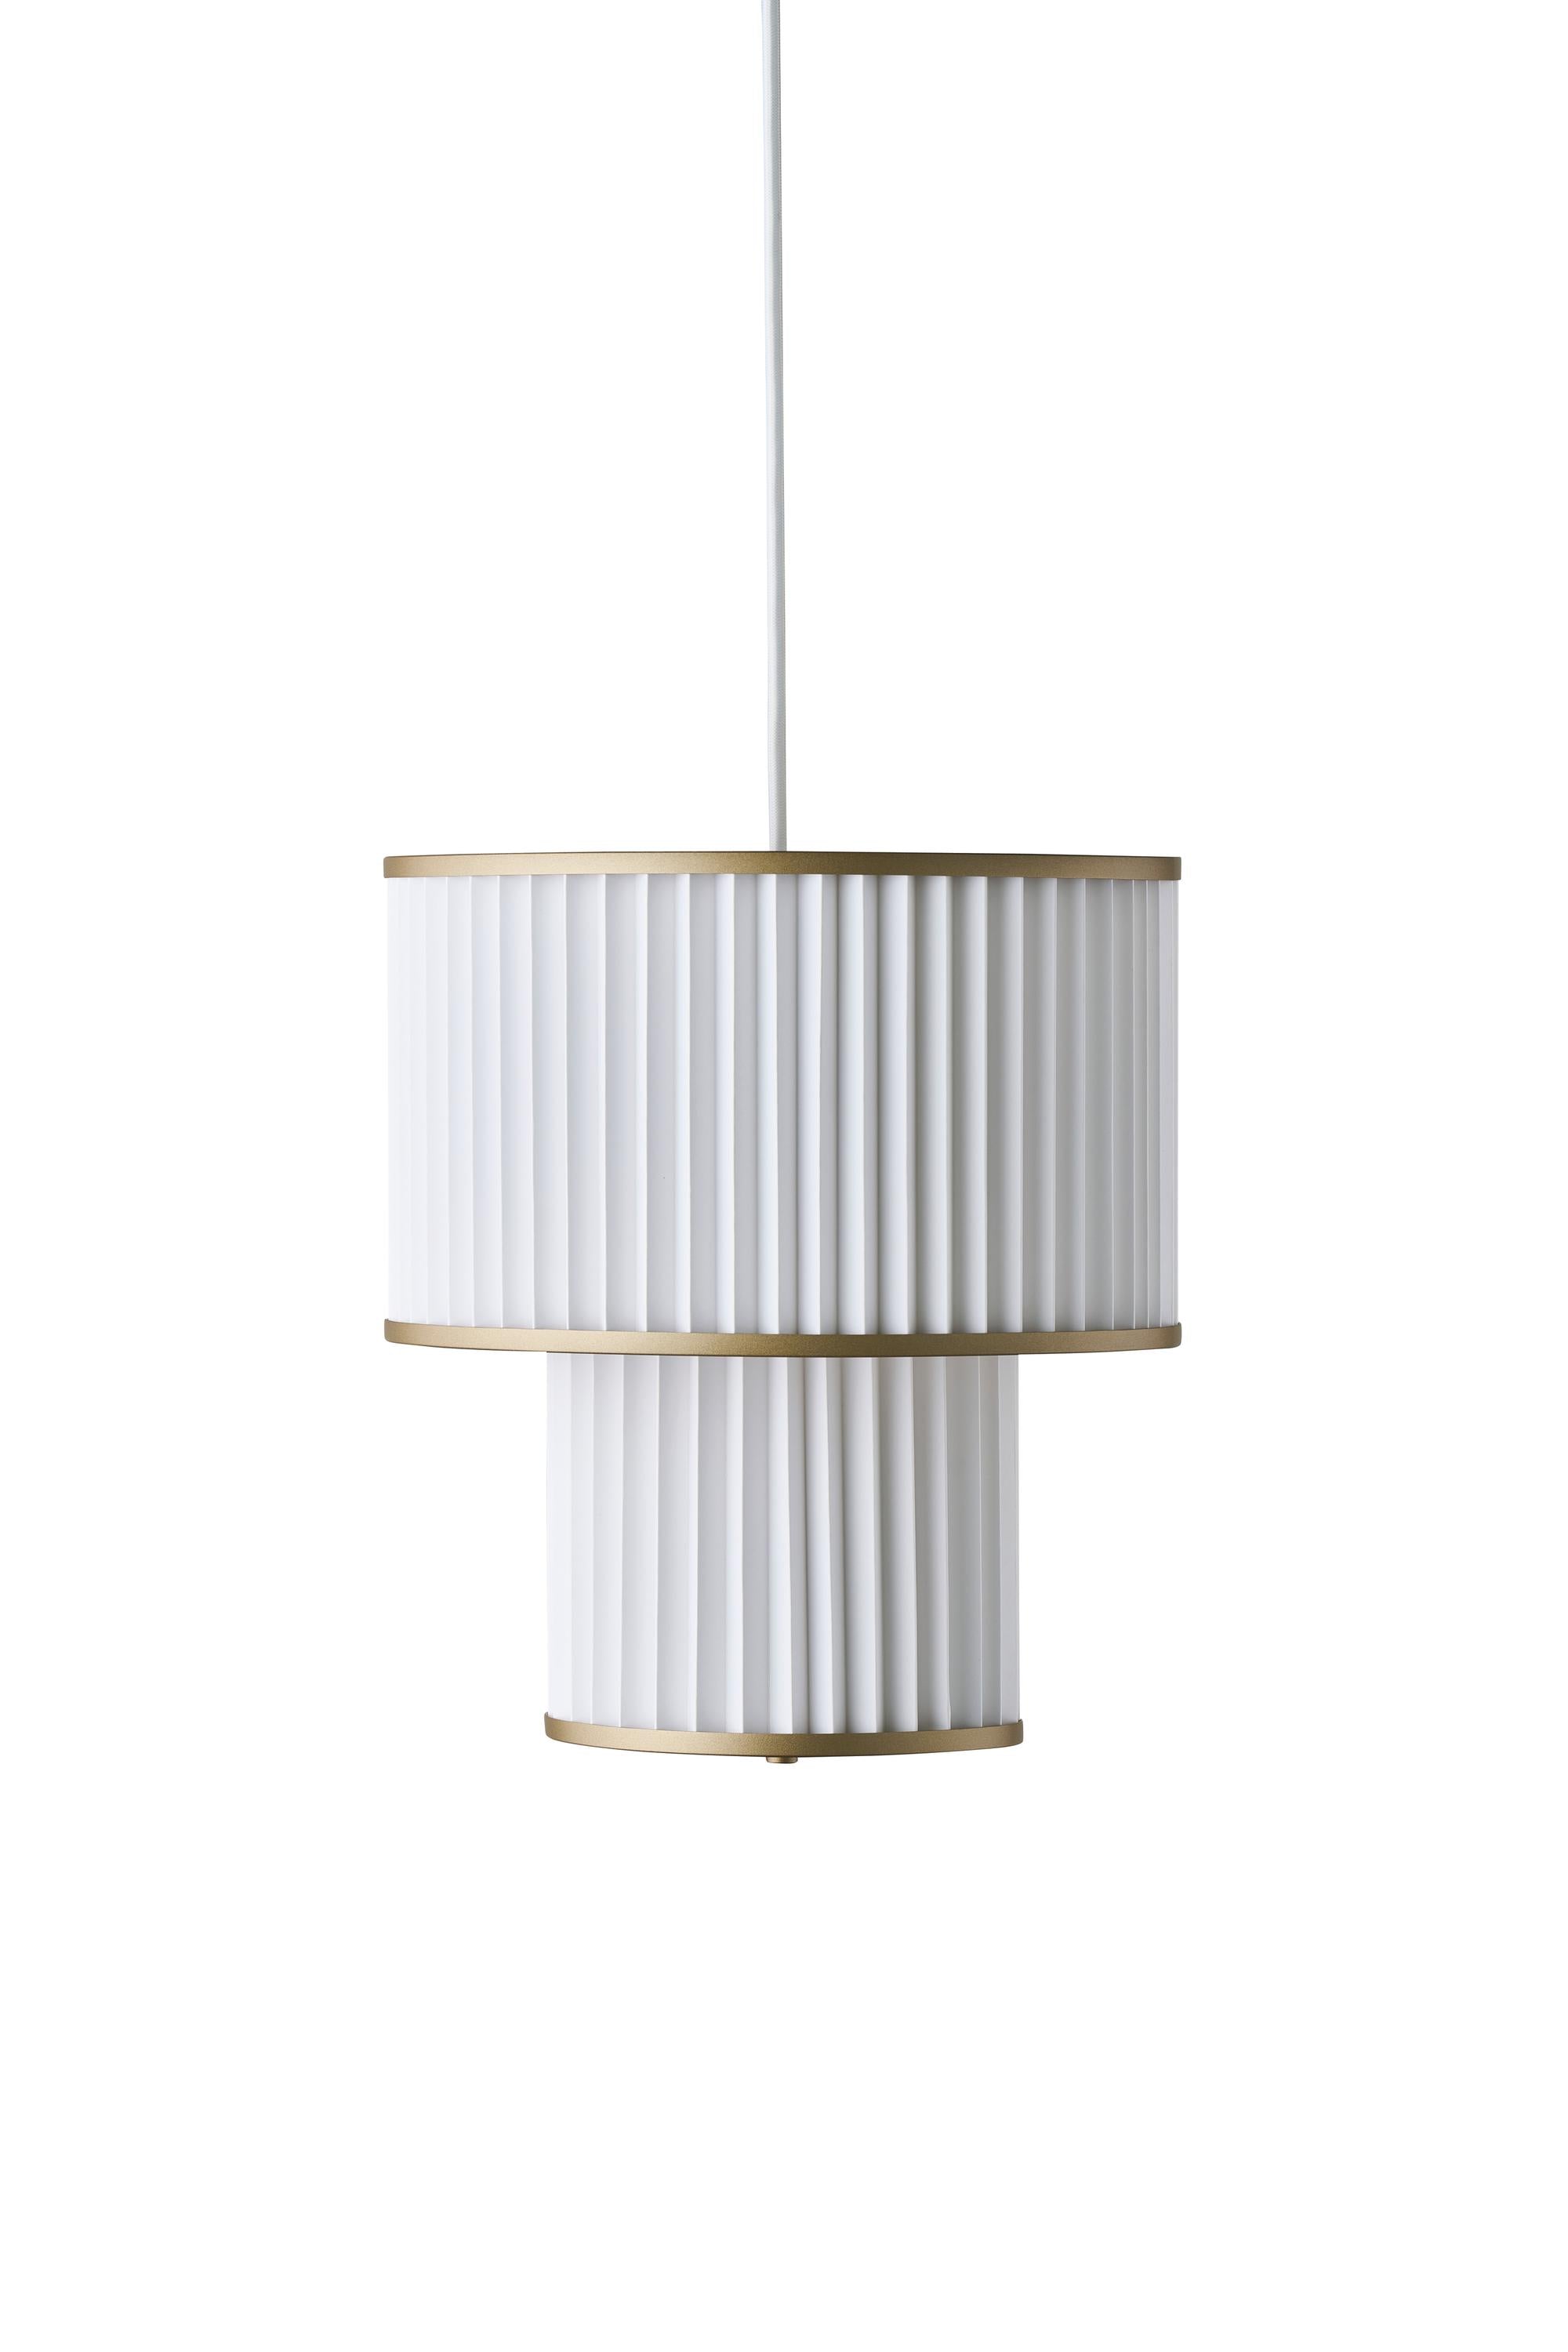 Le Klint Plivello Suspension Lamp Golden/White med 2 nuancer (S M)